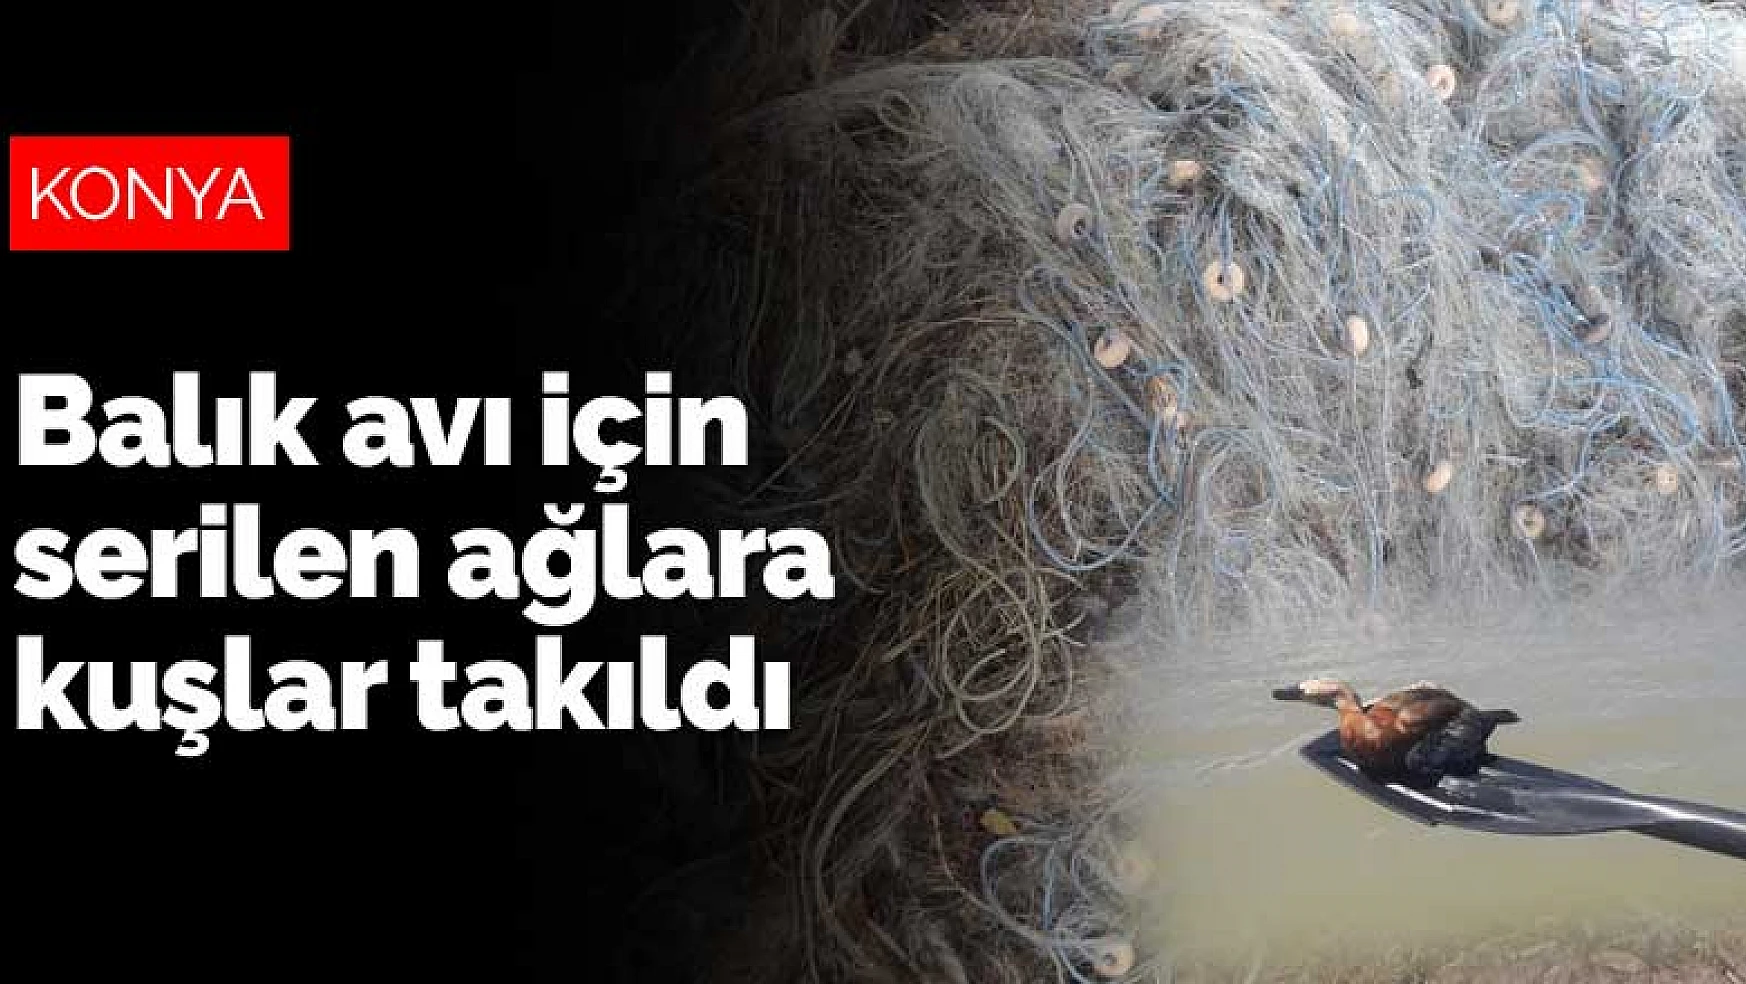 Konya'da balık avı için serilen ağlara kuşlar takıldı